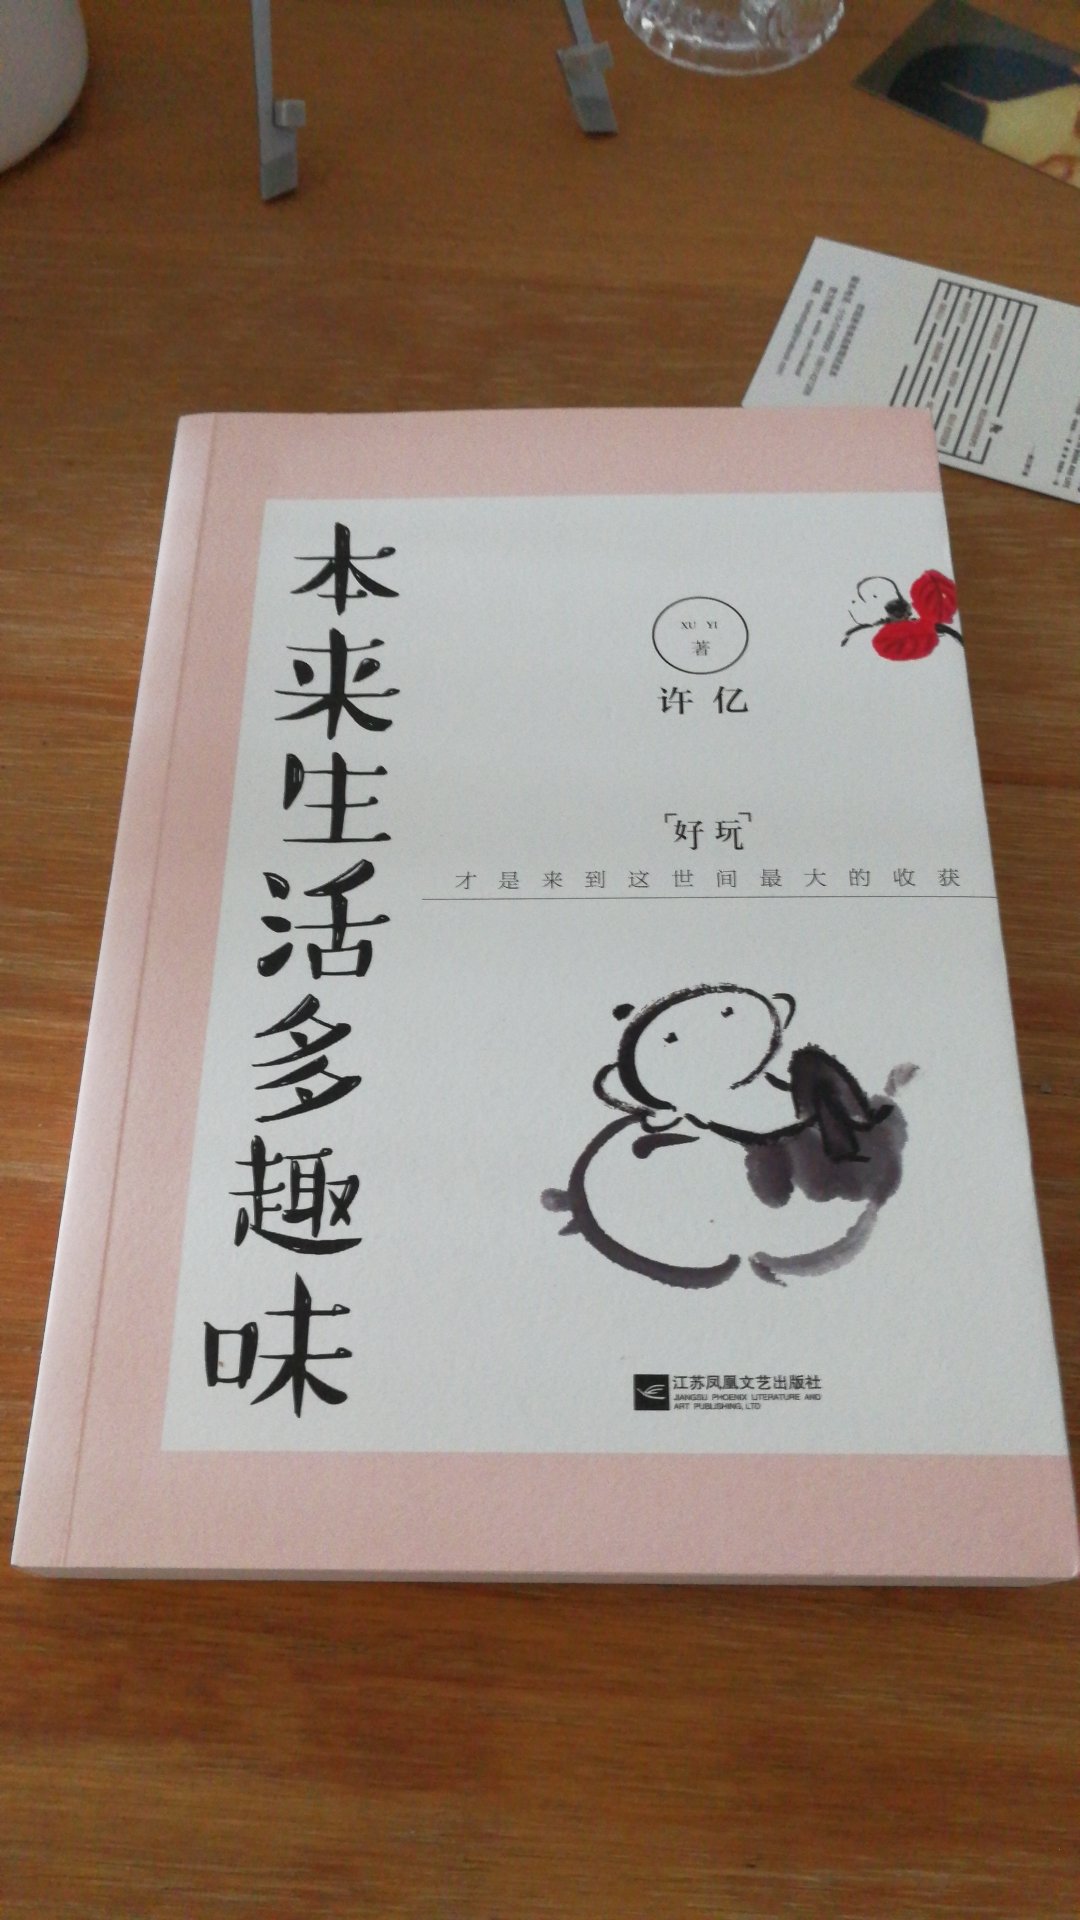 本来生活多趣味，好玩才是来到这世间最大的收获，江苏凤凰文艺出版社